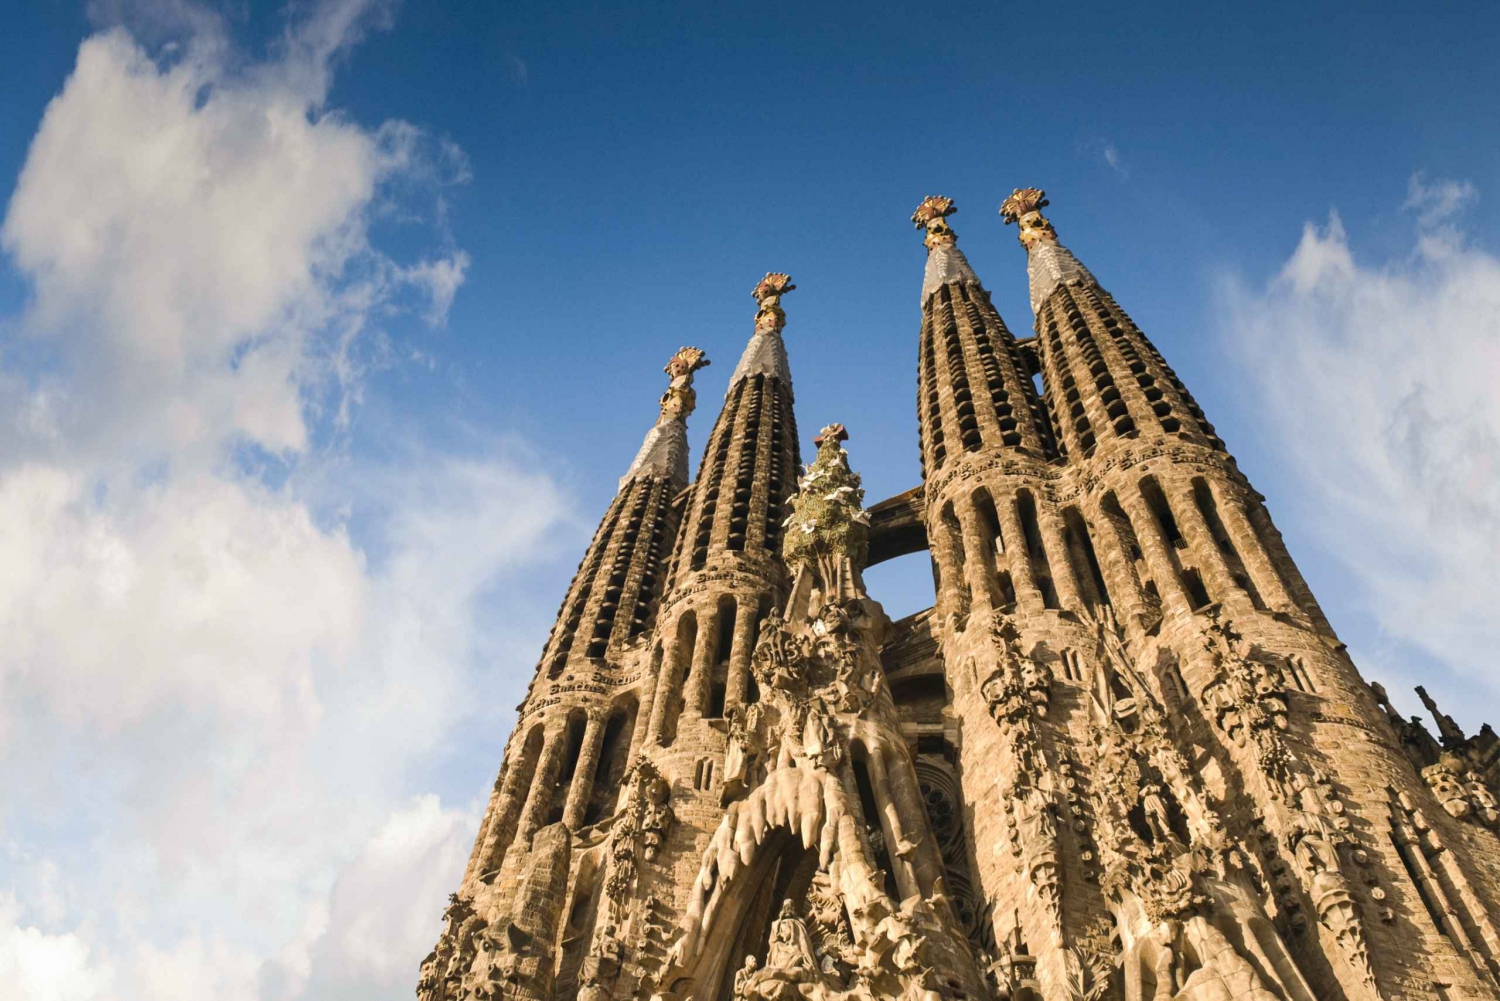 Barcelona: Visita guiada a la Sagrada Familia con acceso prioritario